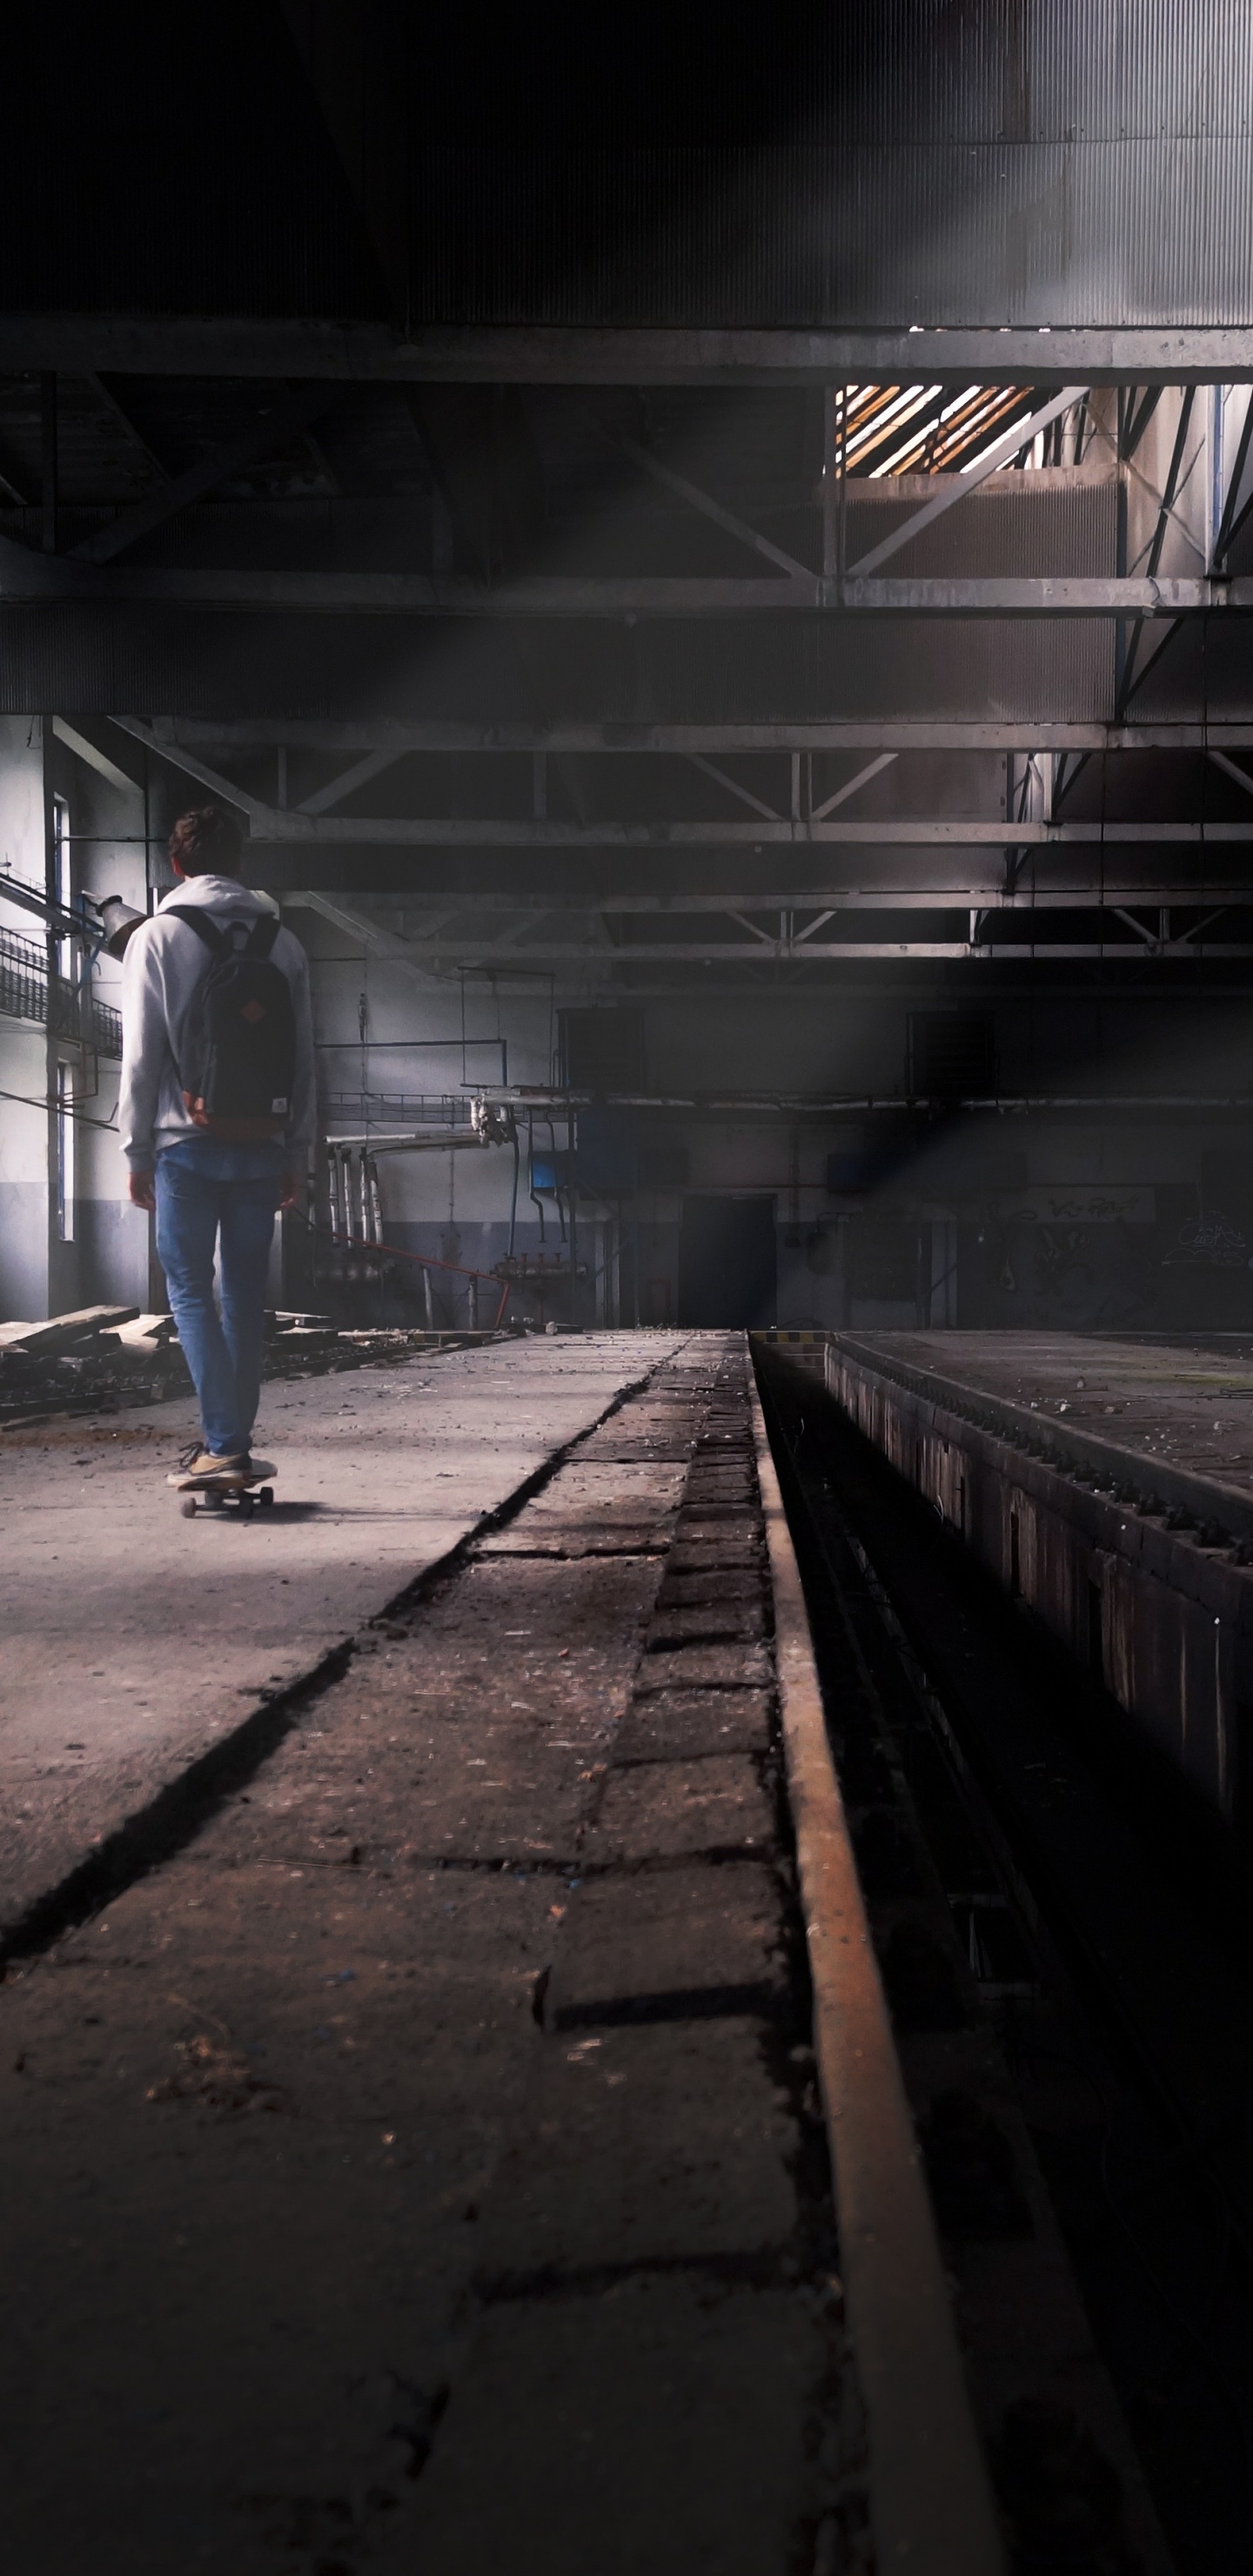 Man in Blue Denim Jeans Walking on Train Station. Wallpaper in 1440x2960 Resolution